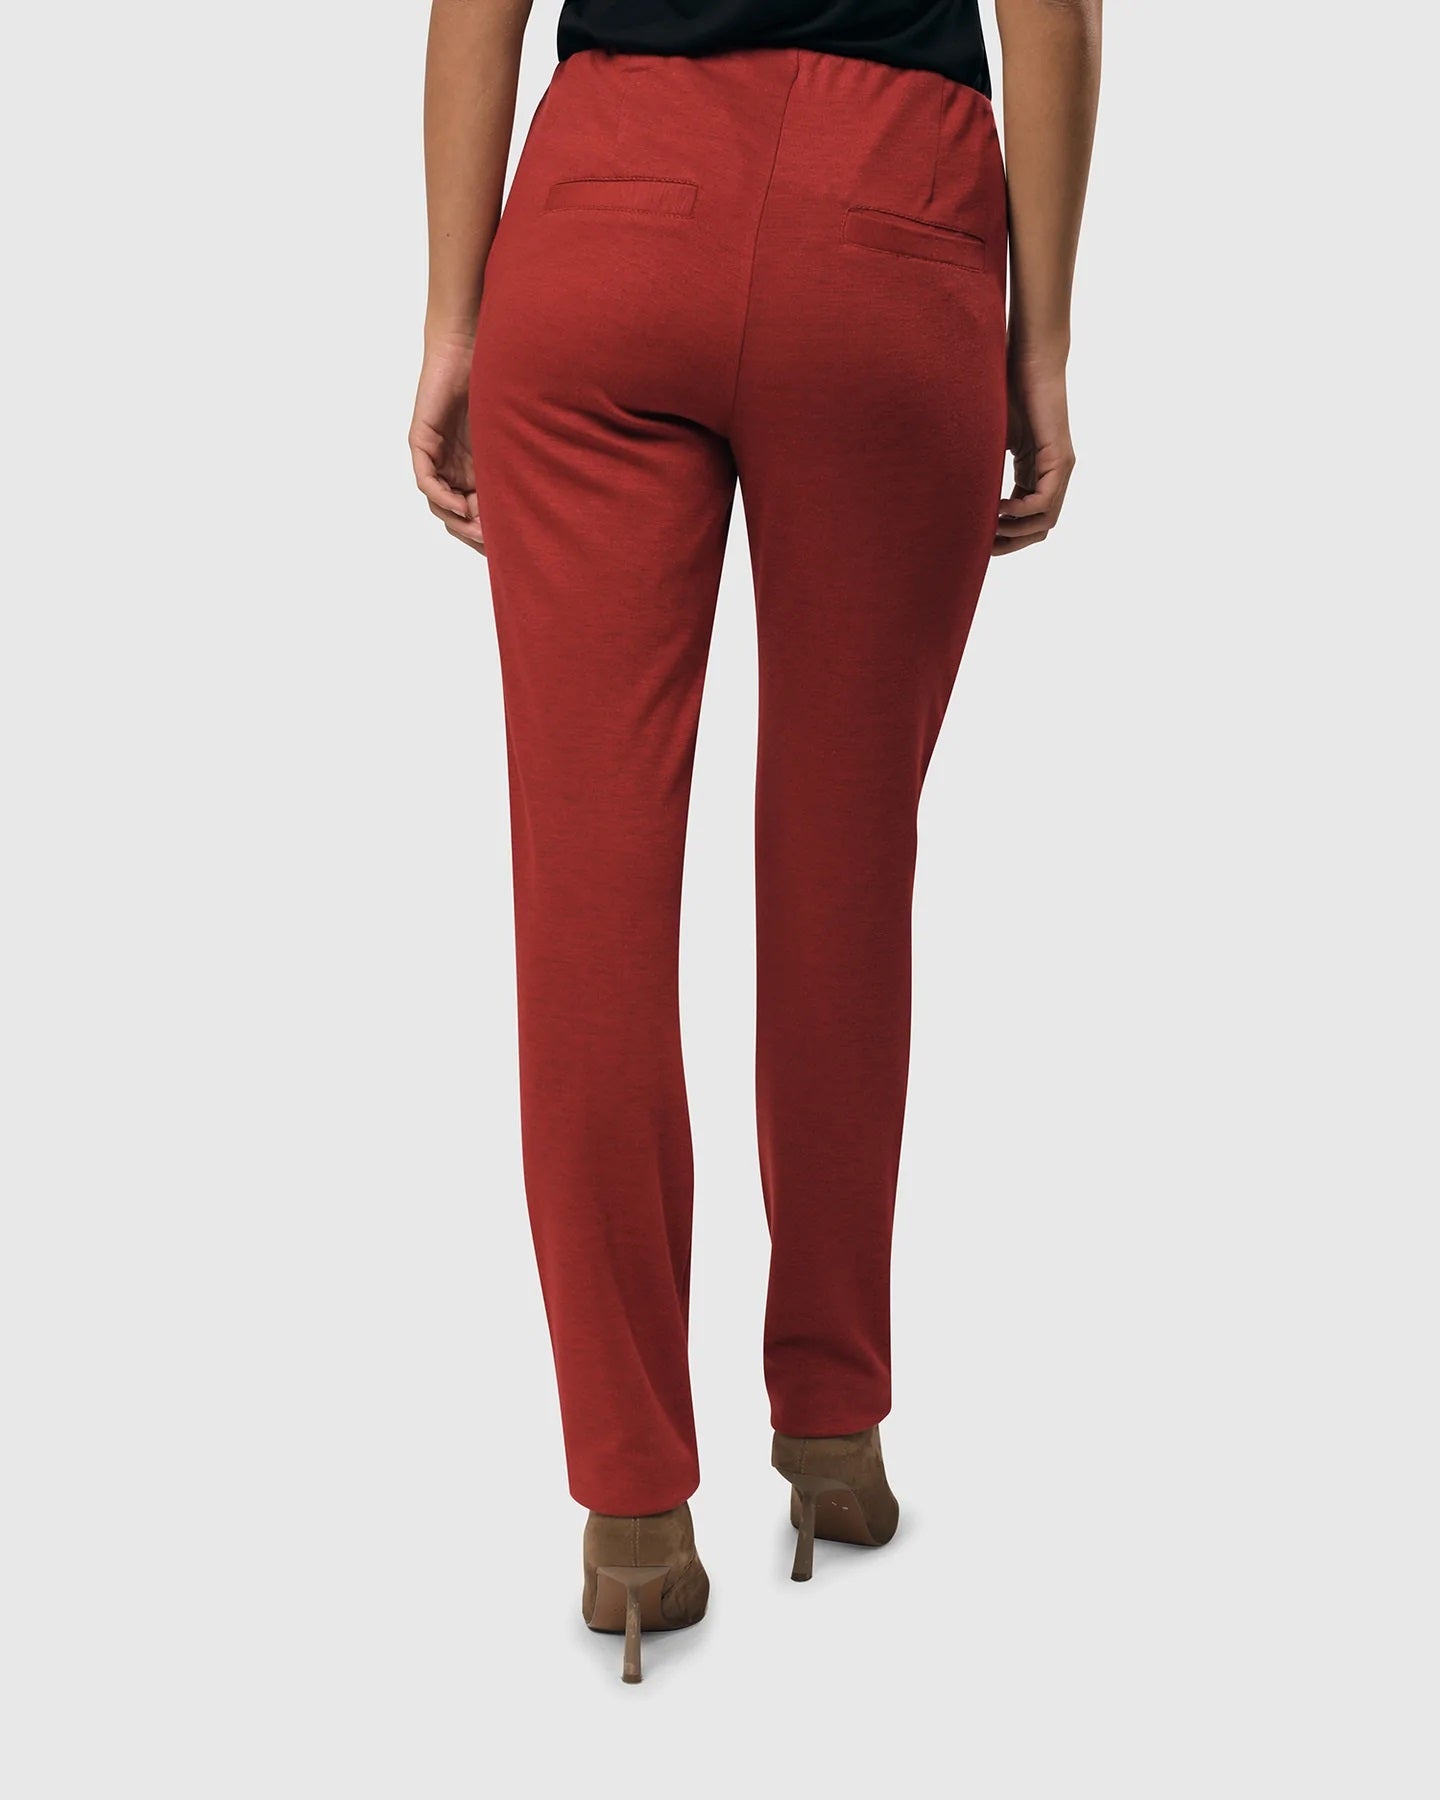 Essential Slim Pants in Red by Alembika